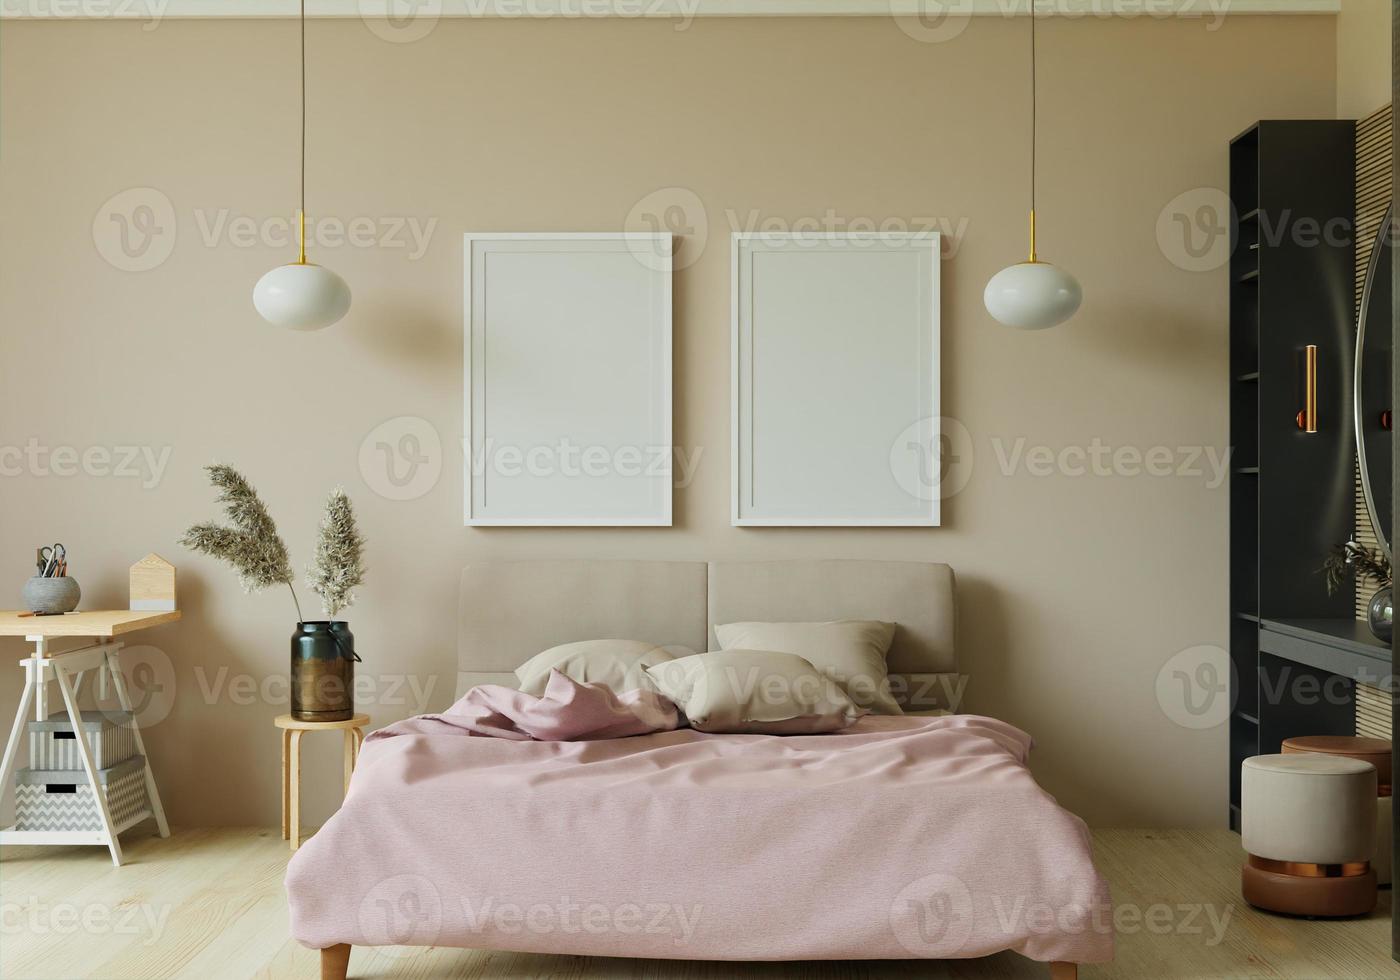 3D interoir design for bedroom and mockup frame photo